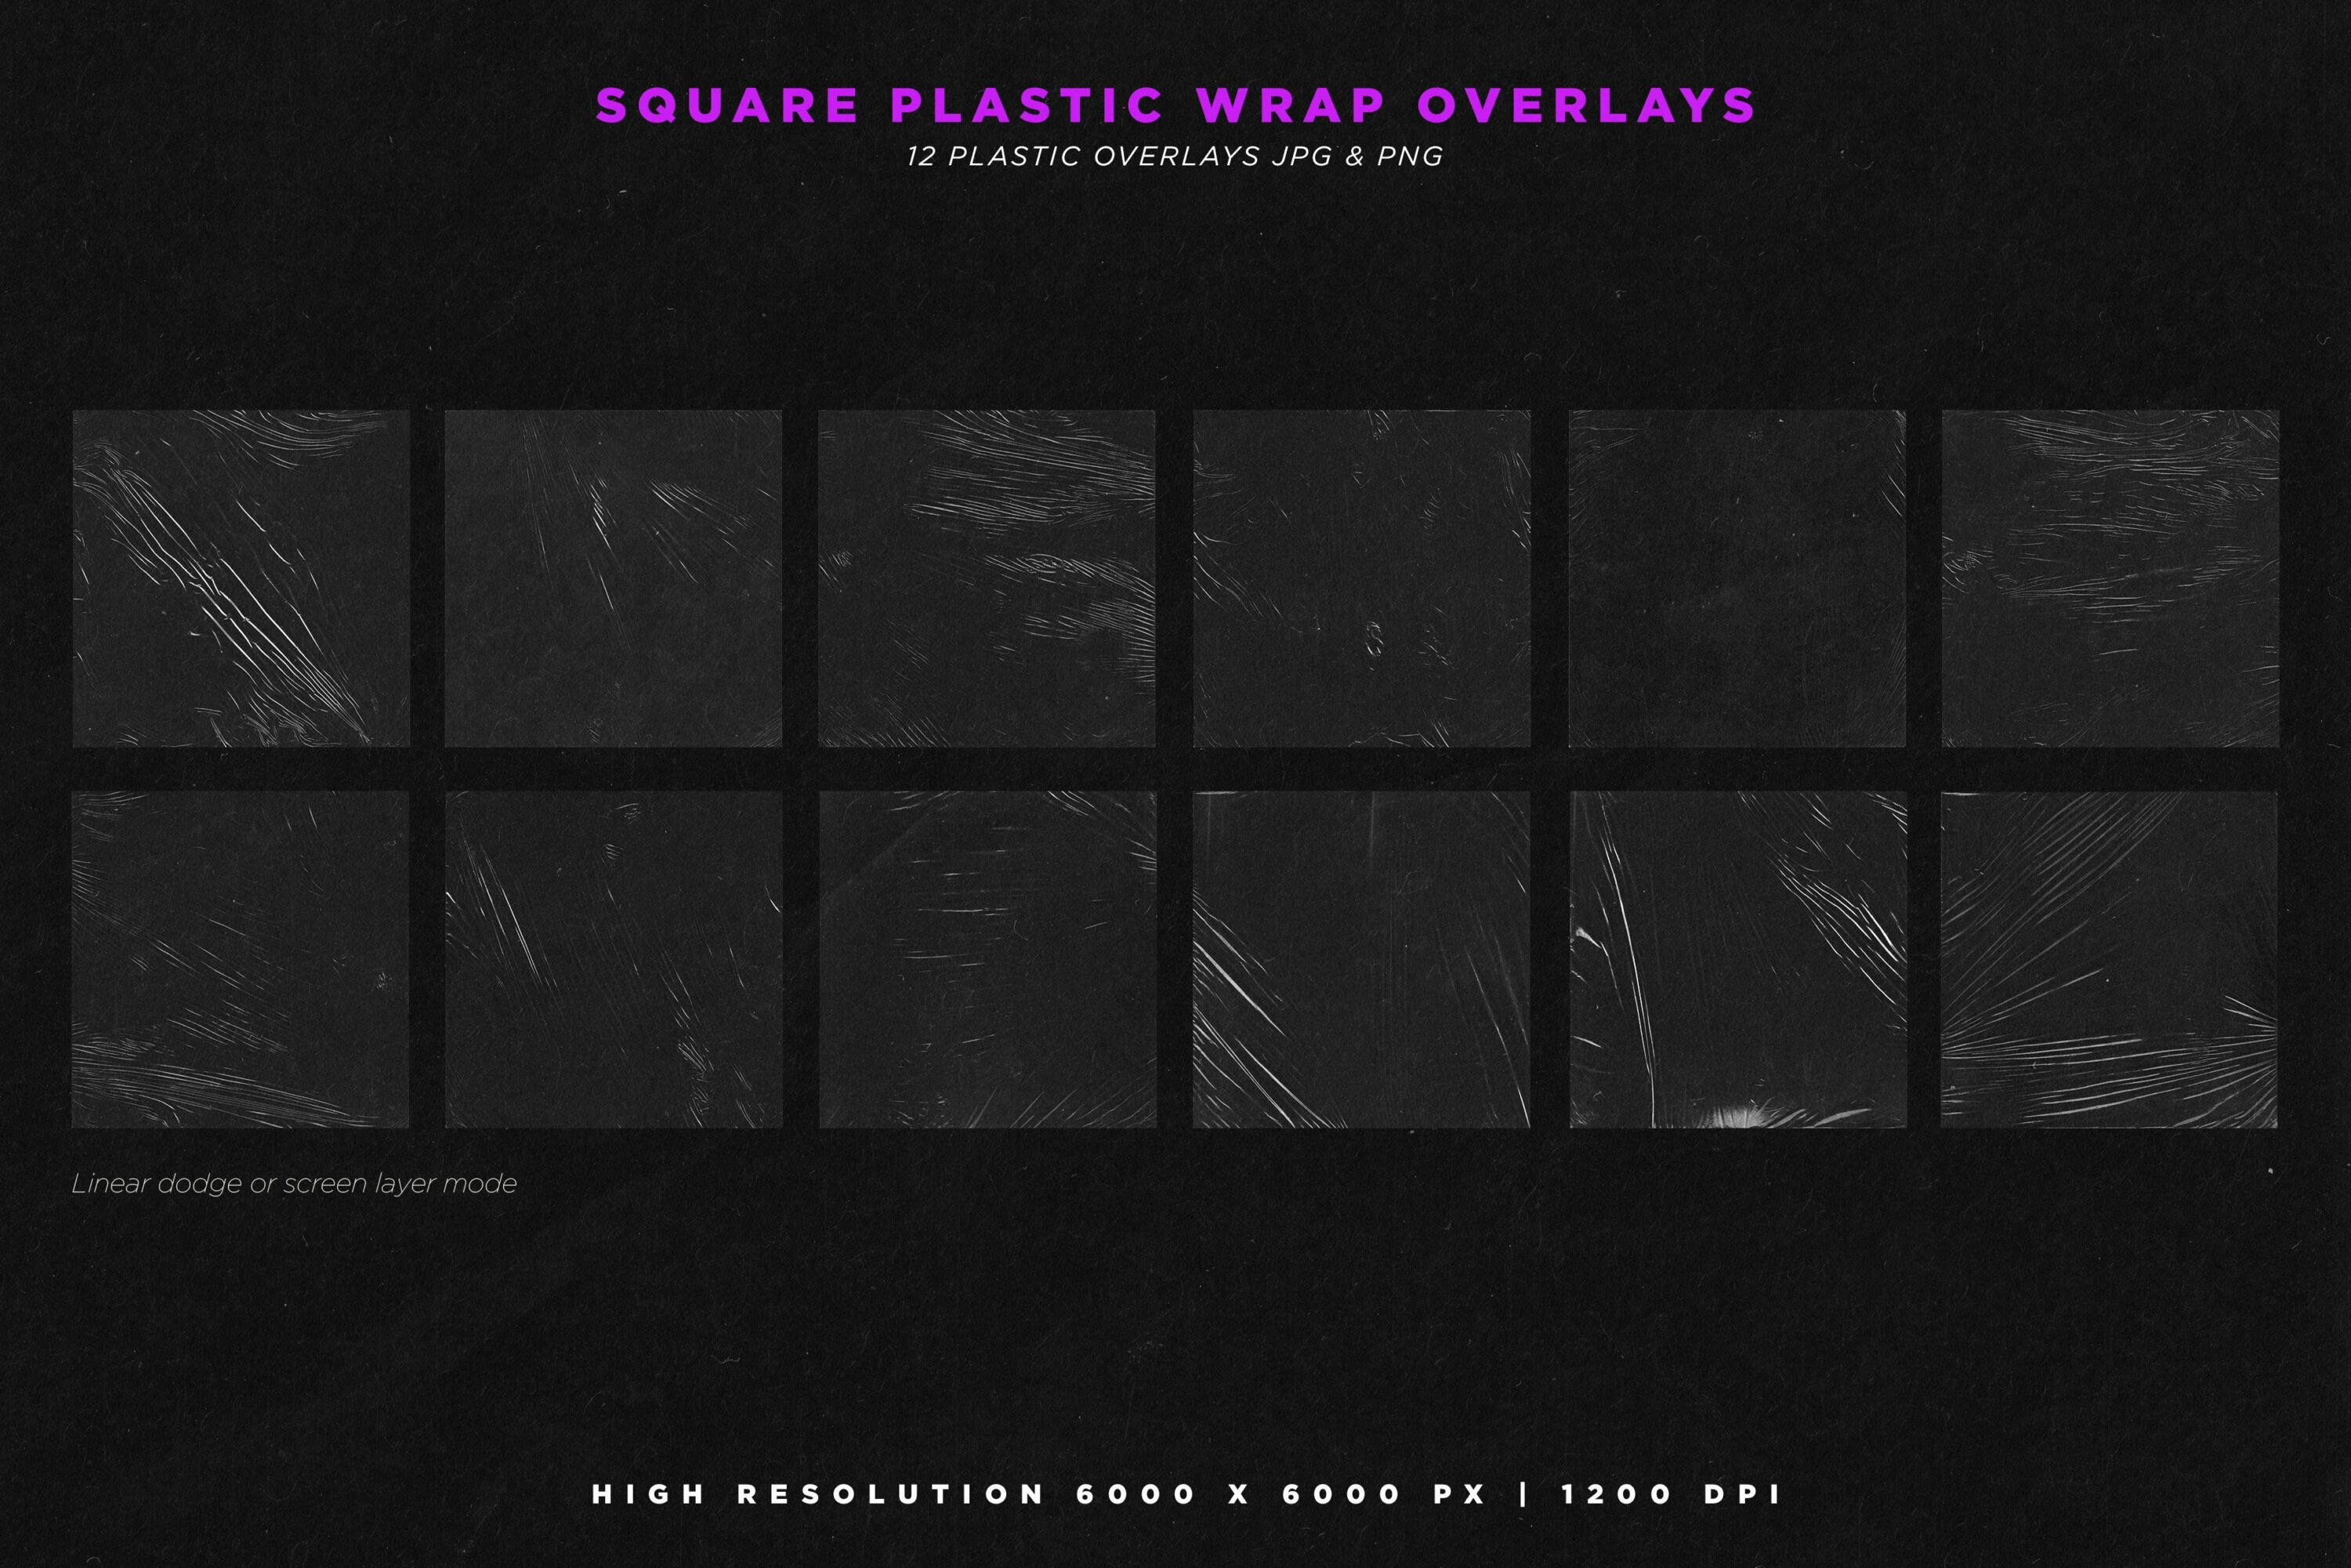 Square plastic wrap overlays.